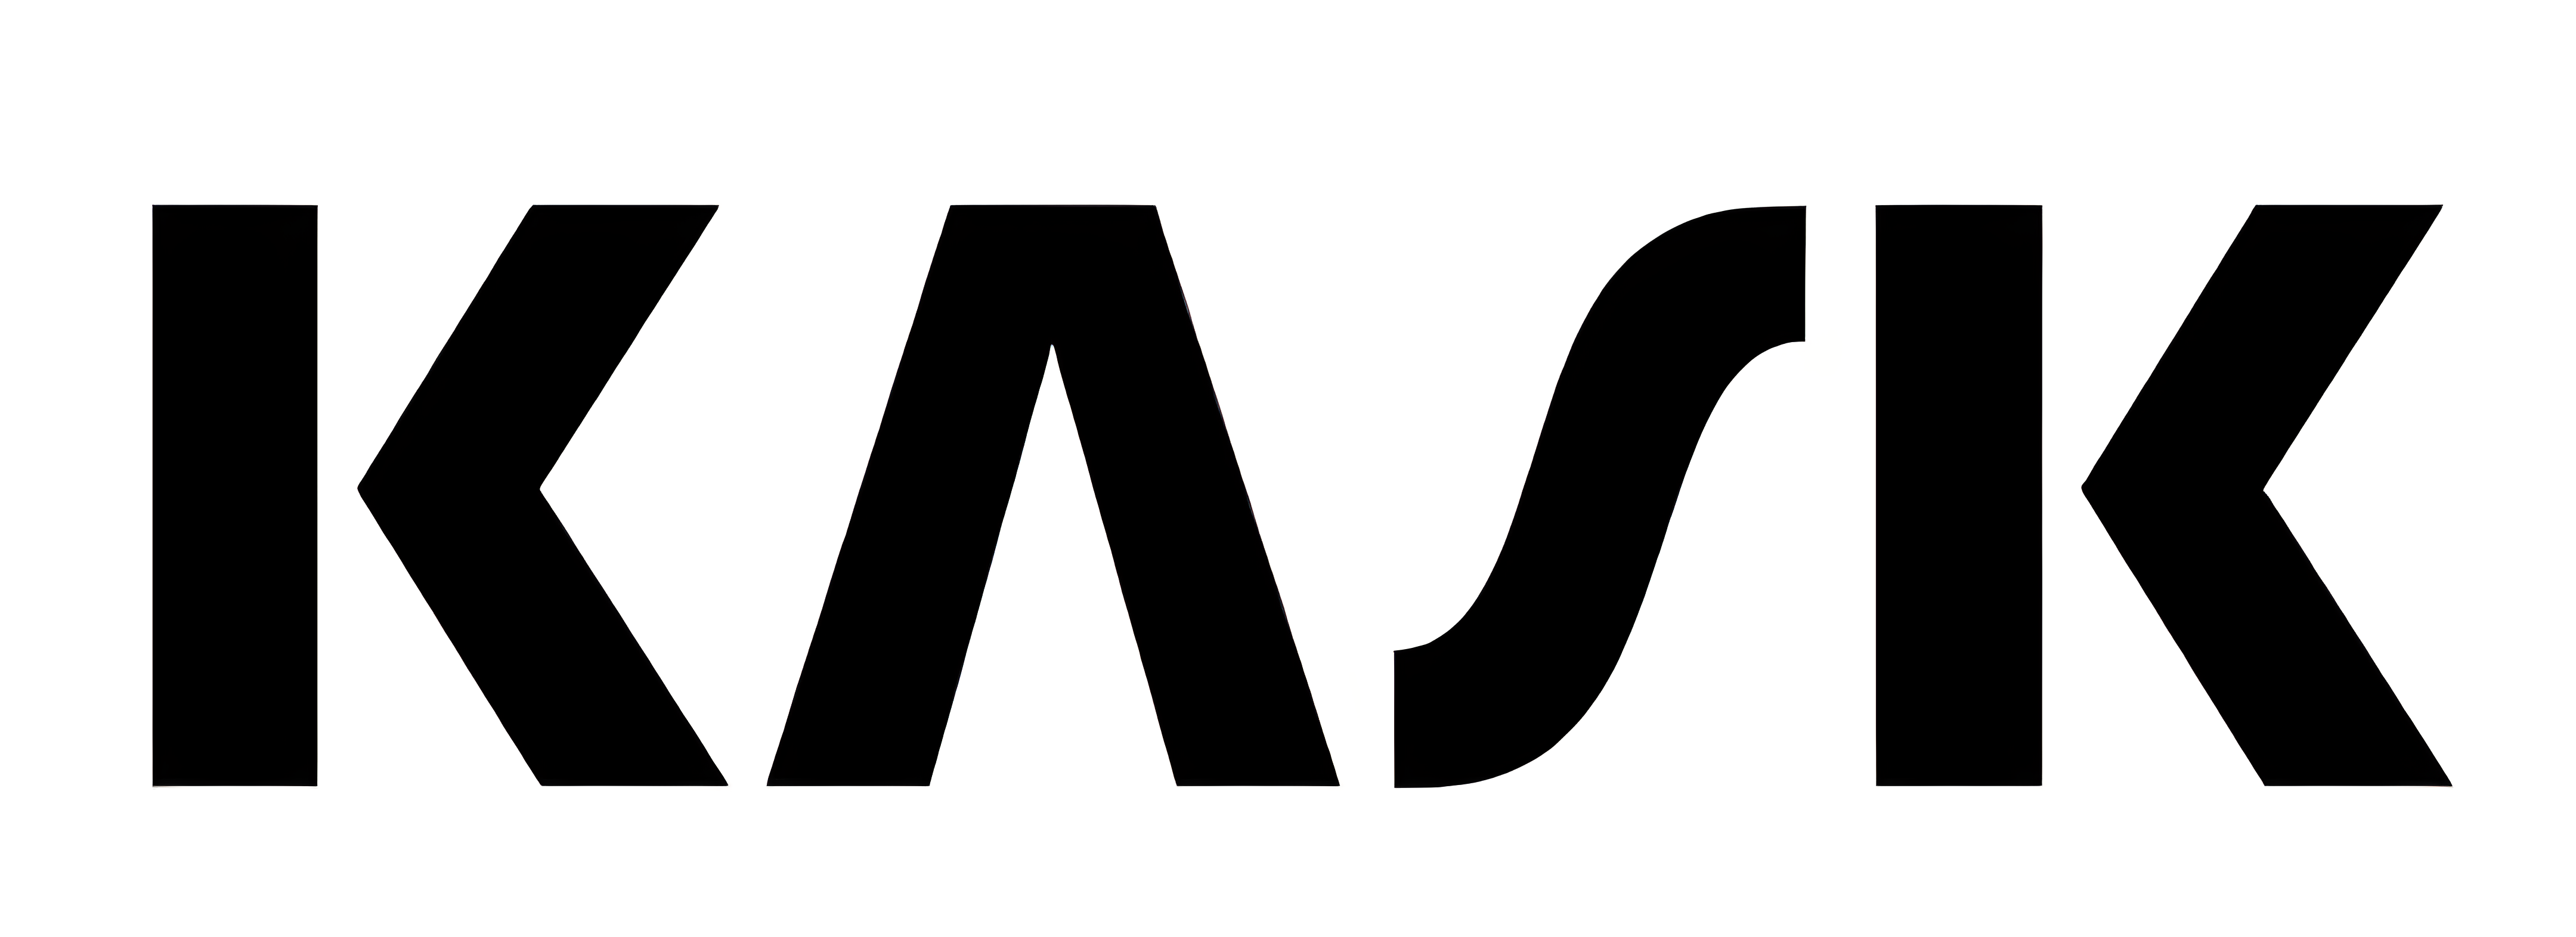 logo-kask